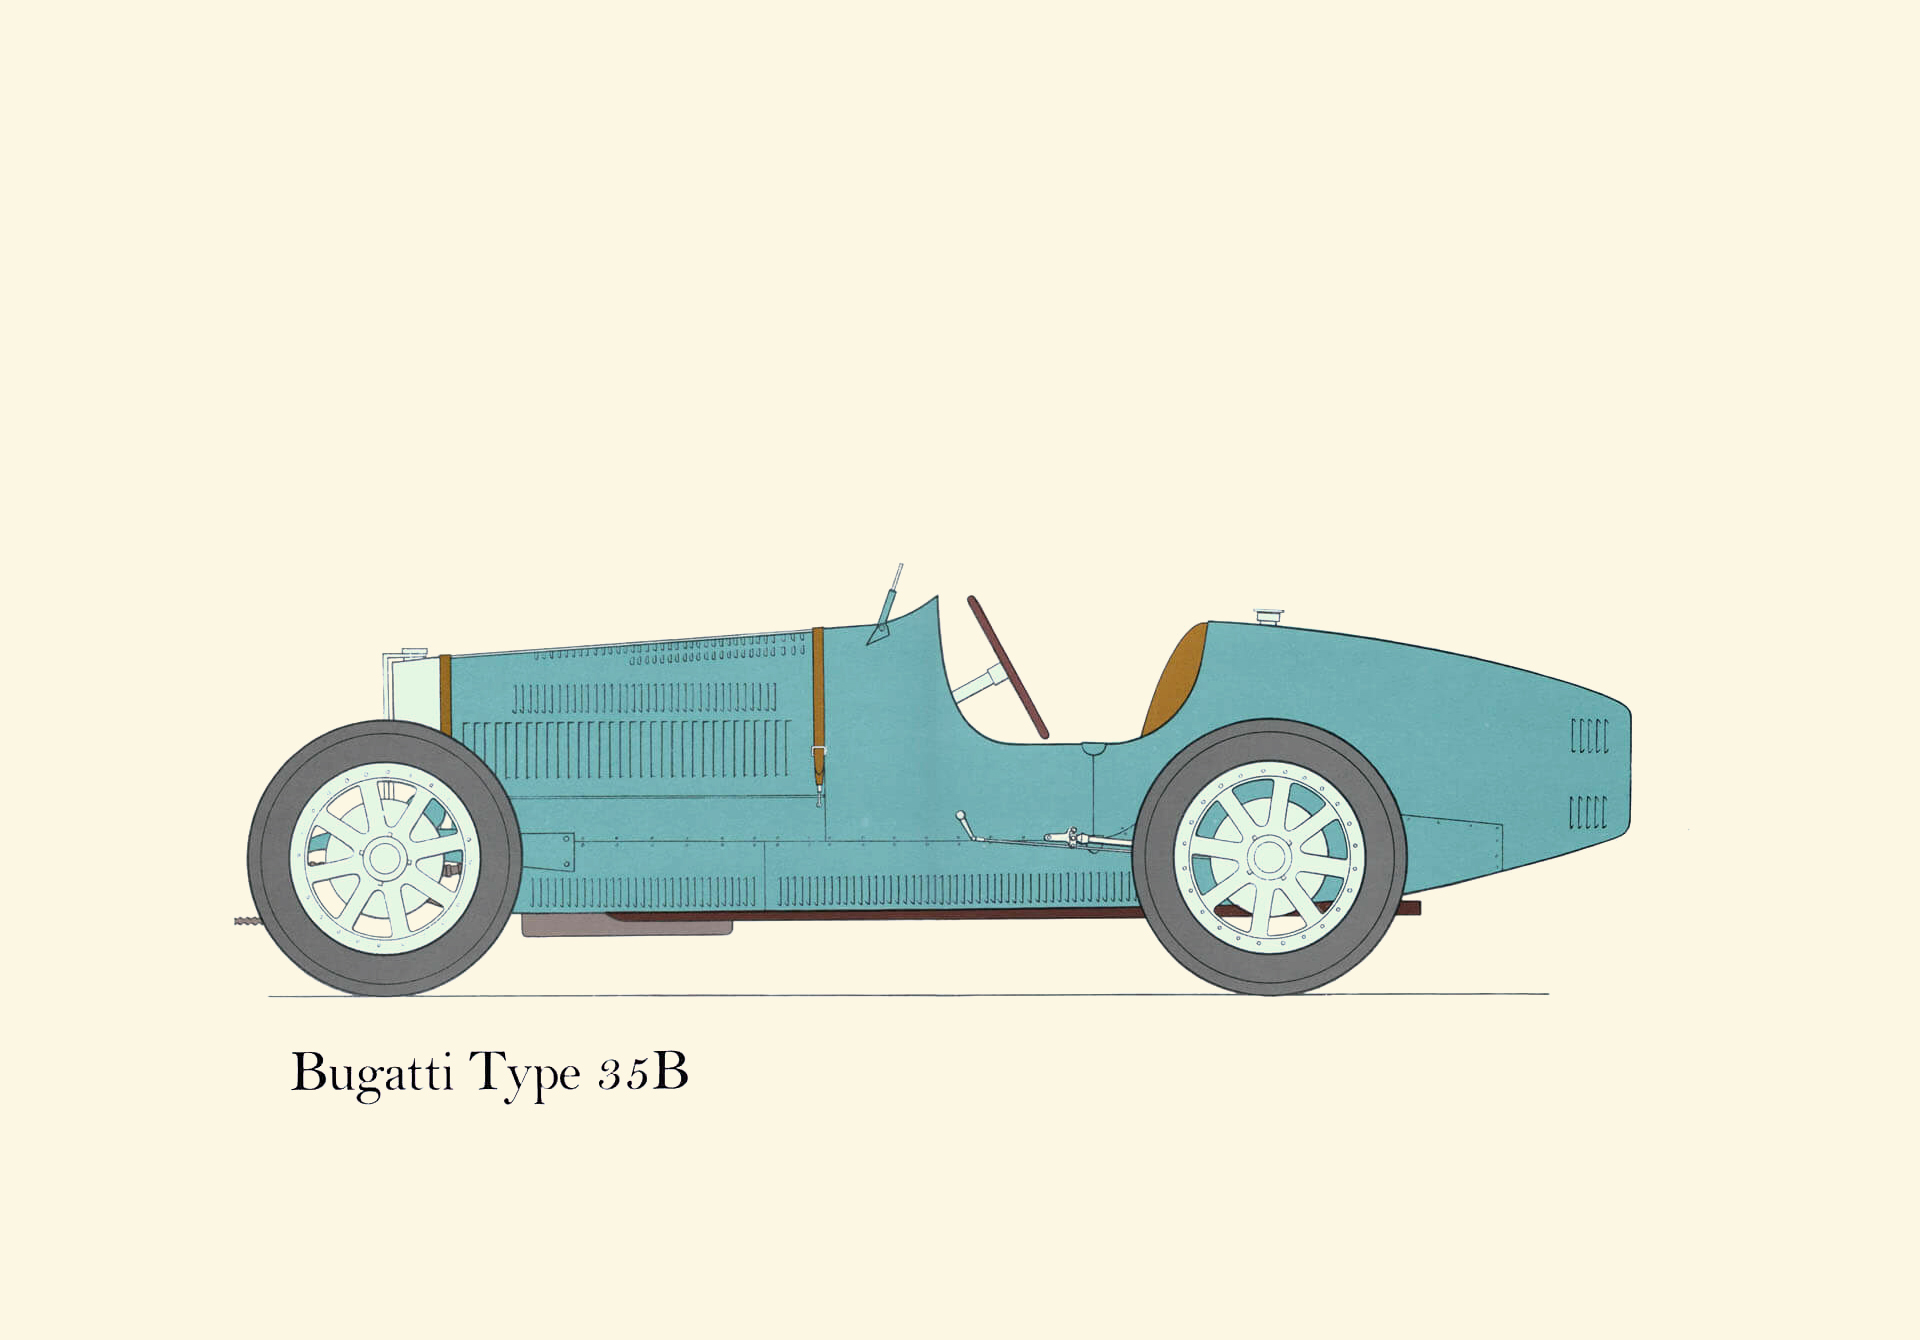 1926/30 Bugatti Type 35B: Drawn by George Oliver